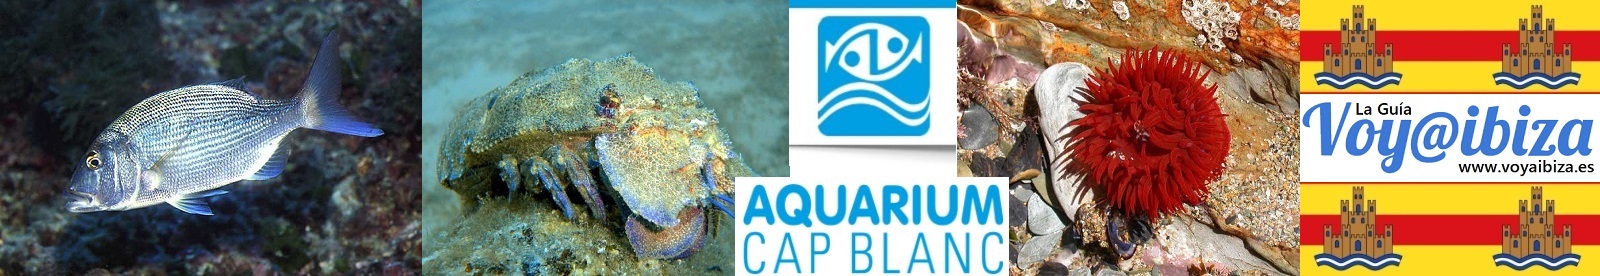 Aquarium Cap Blanc, Ibiza - Eivissa